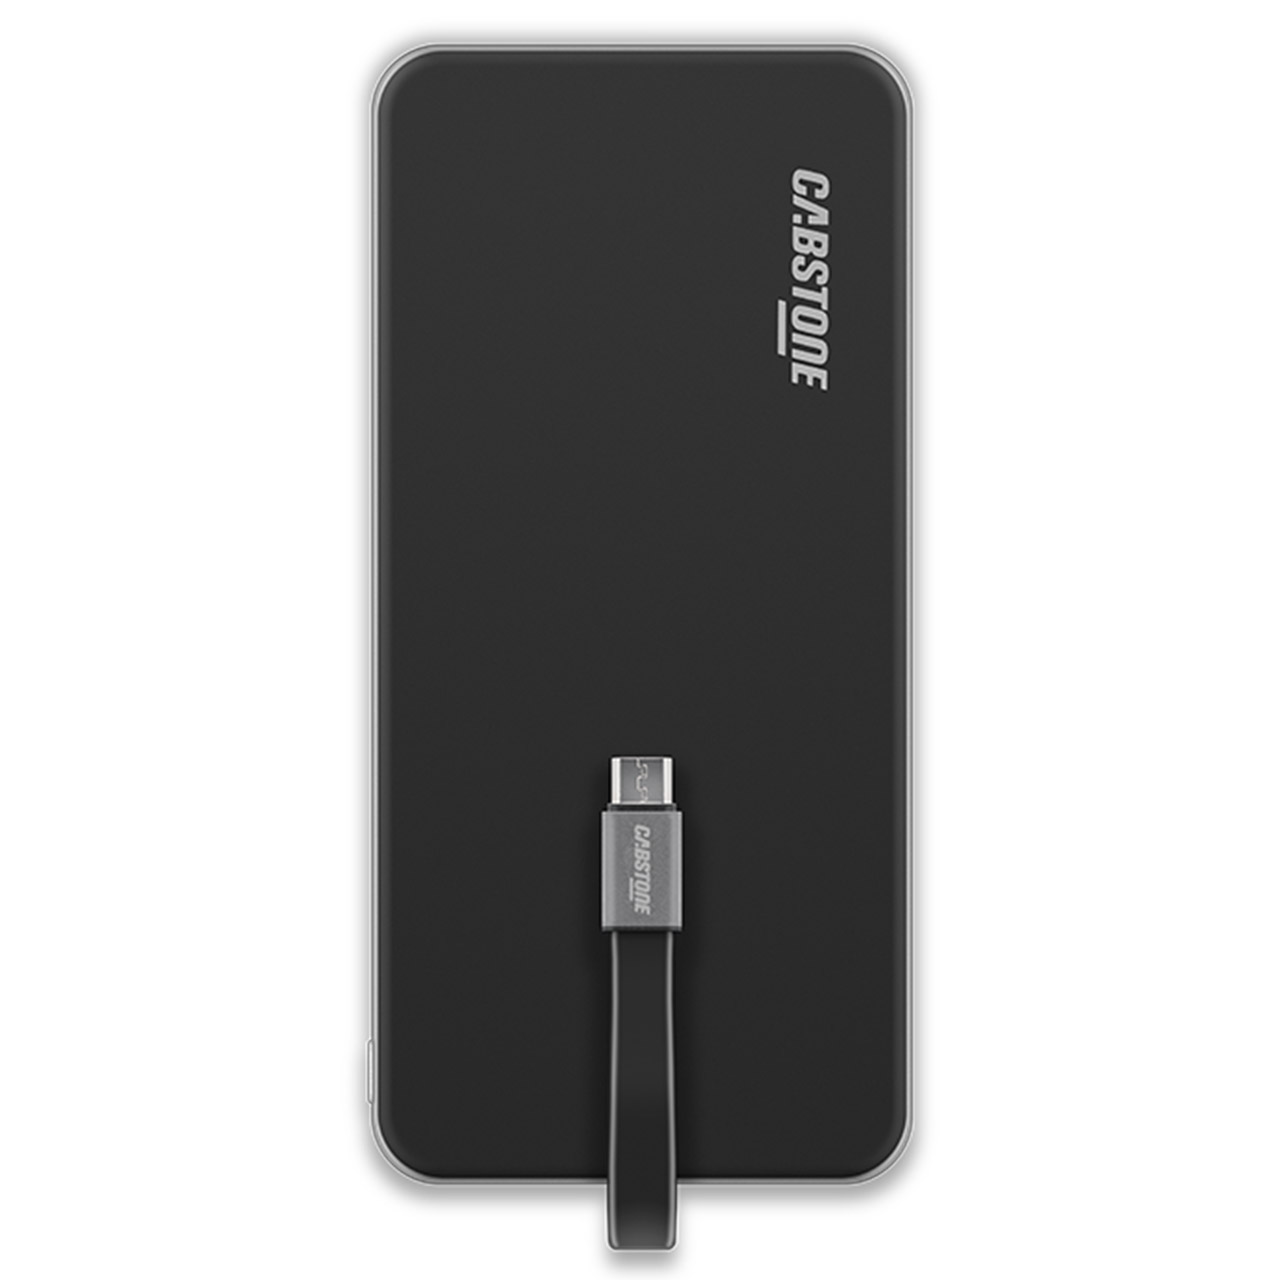 شارژر همراه کبستون مدل PocketPower 6.0 Micro USB ظرفیت 6000 میلی آمپر ساعت